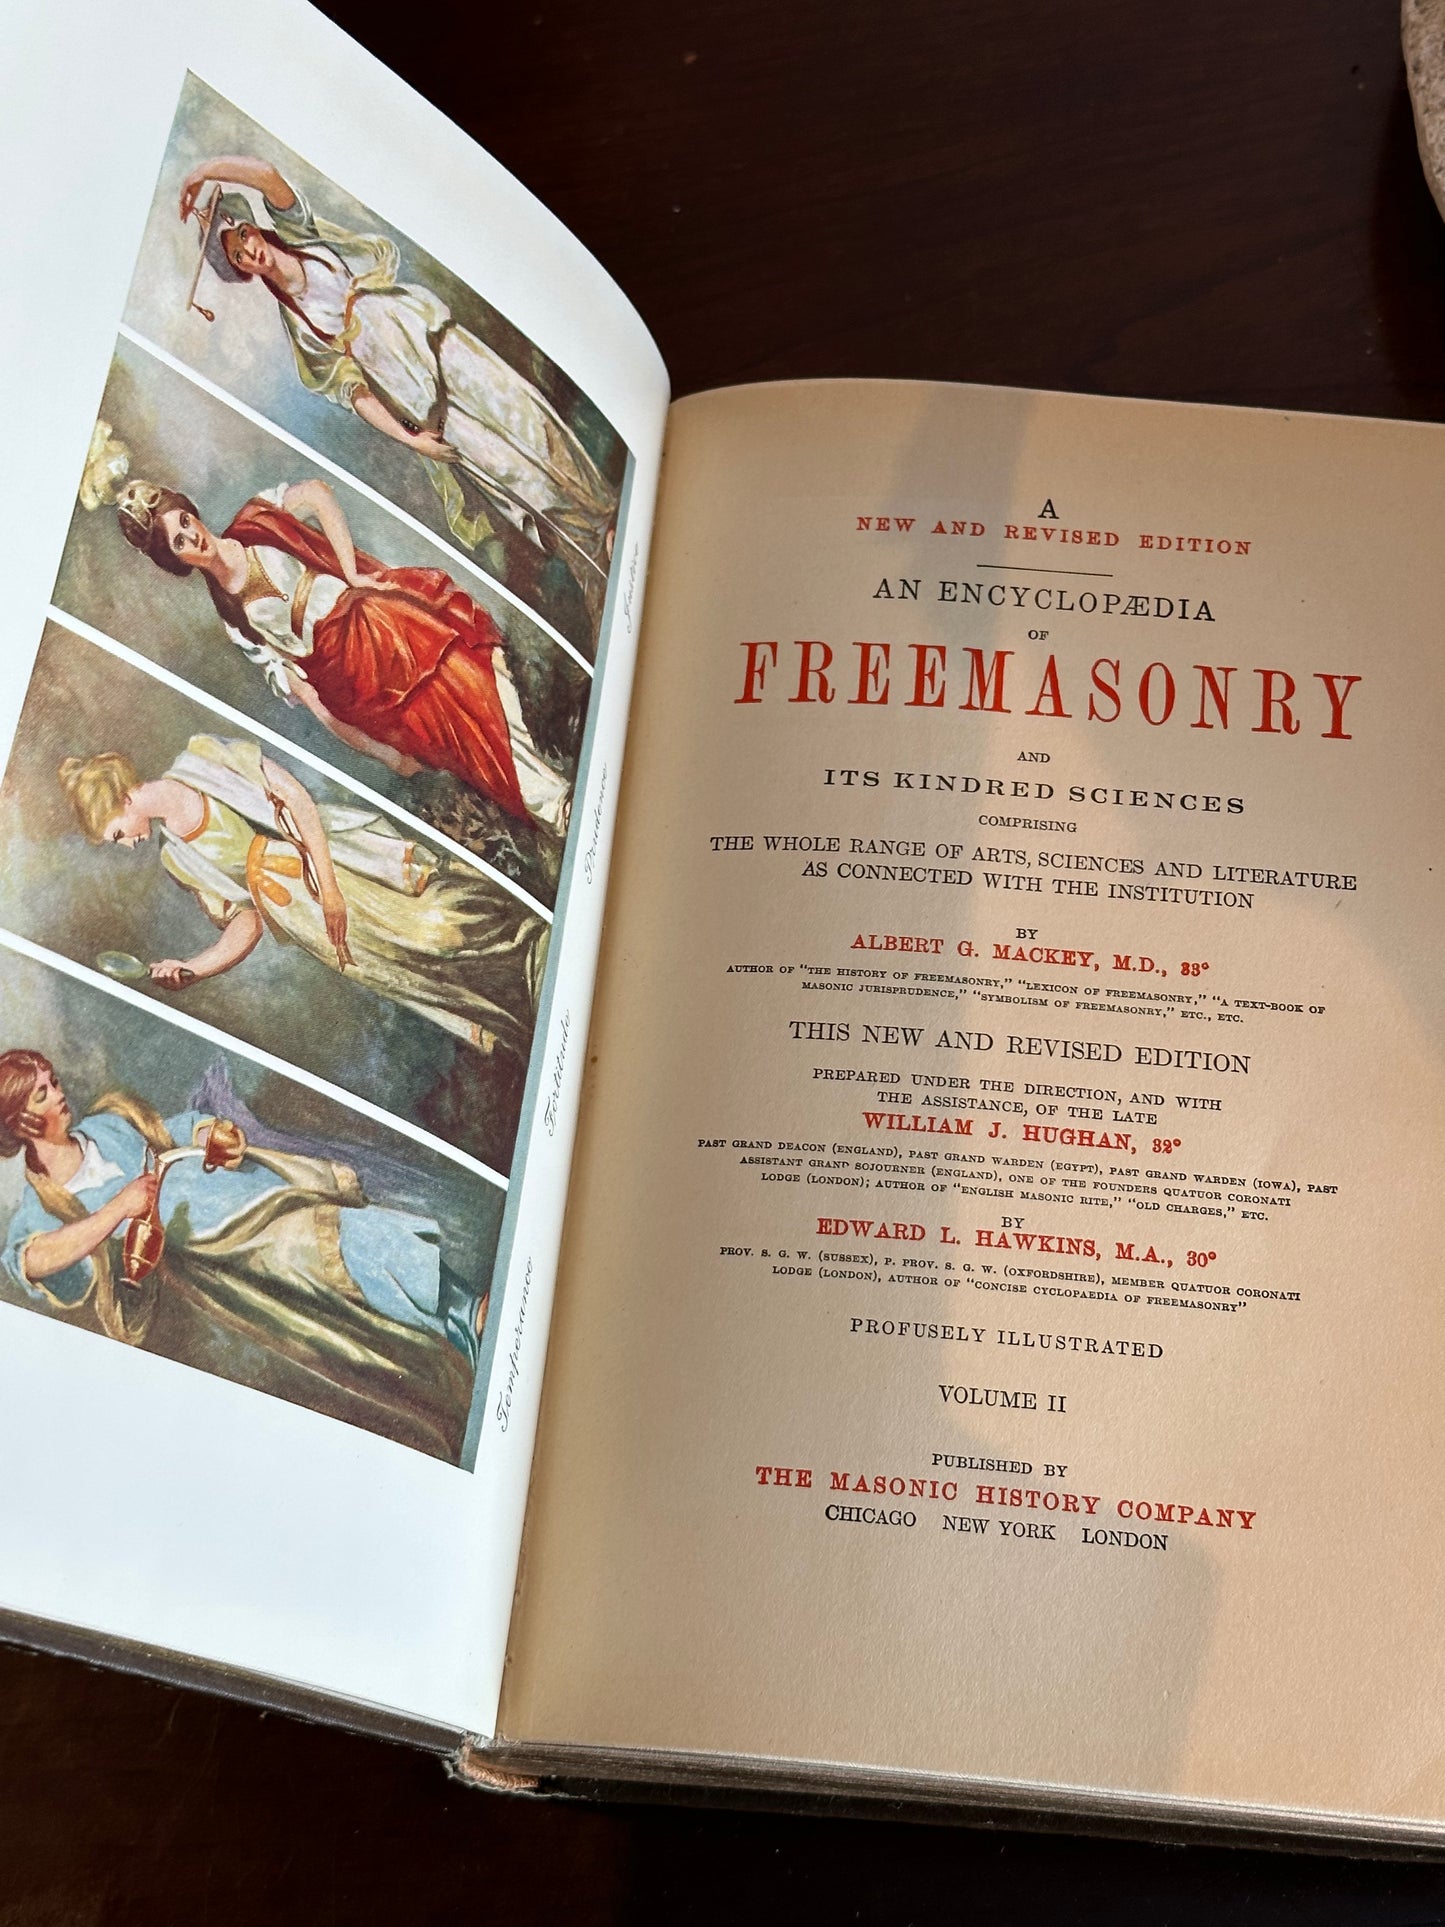 Encyclopedia of Freemasonry by Albert Mackey